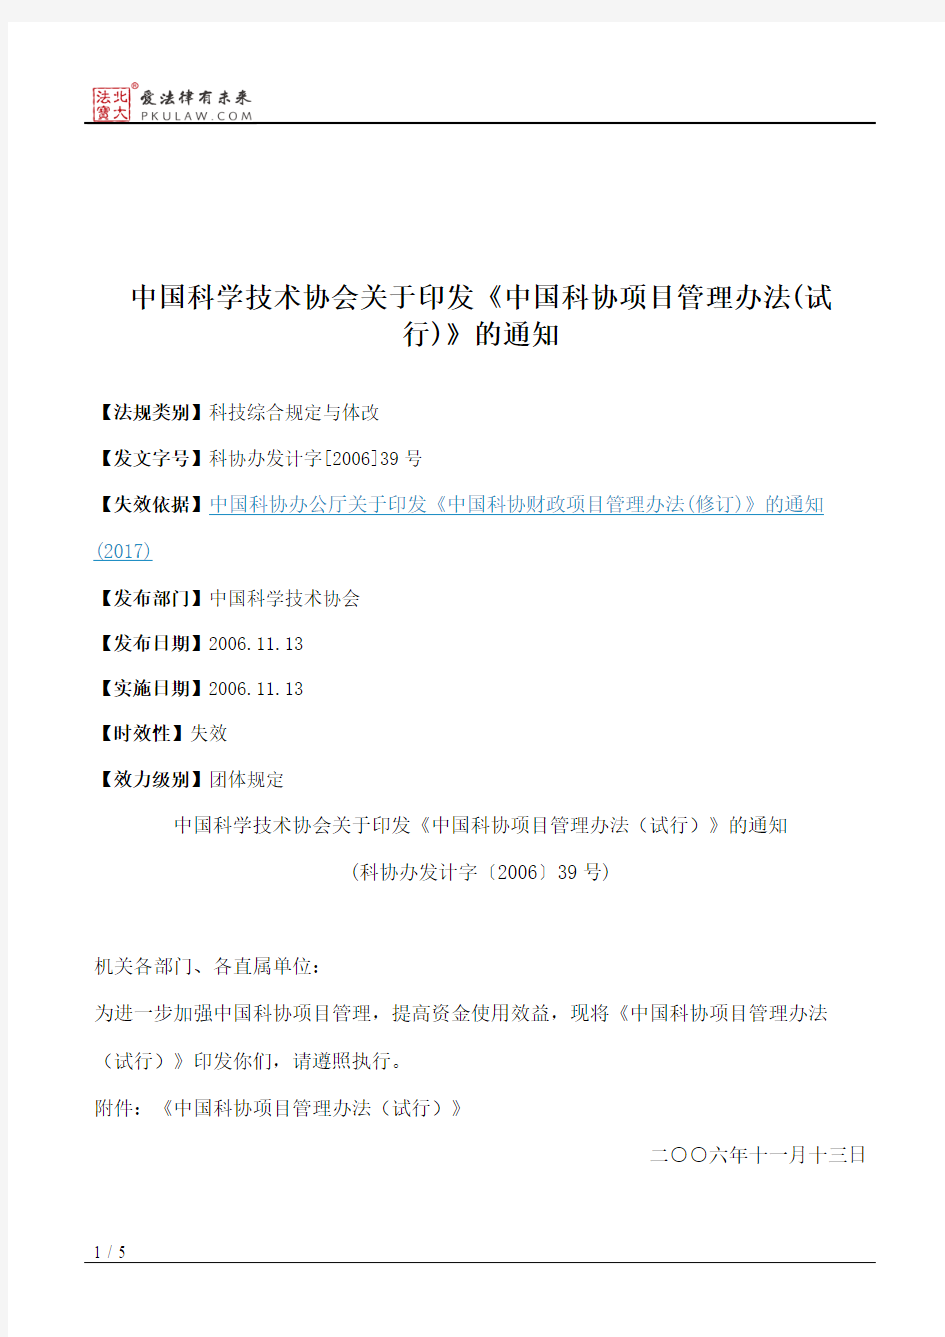 中国科学技术协会关于印发《中国科协项目管理办法(试行)》的通知